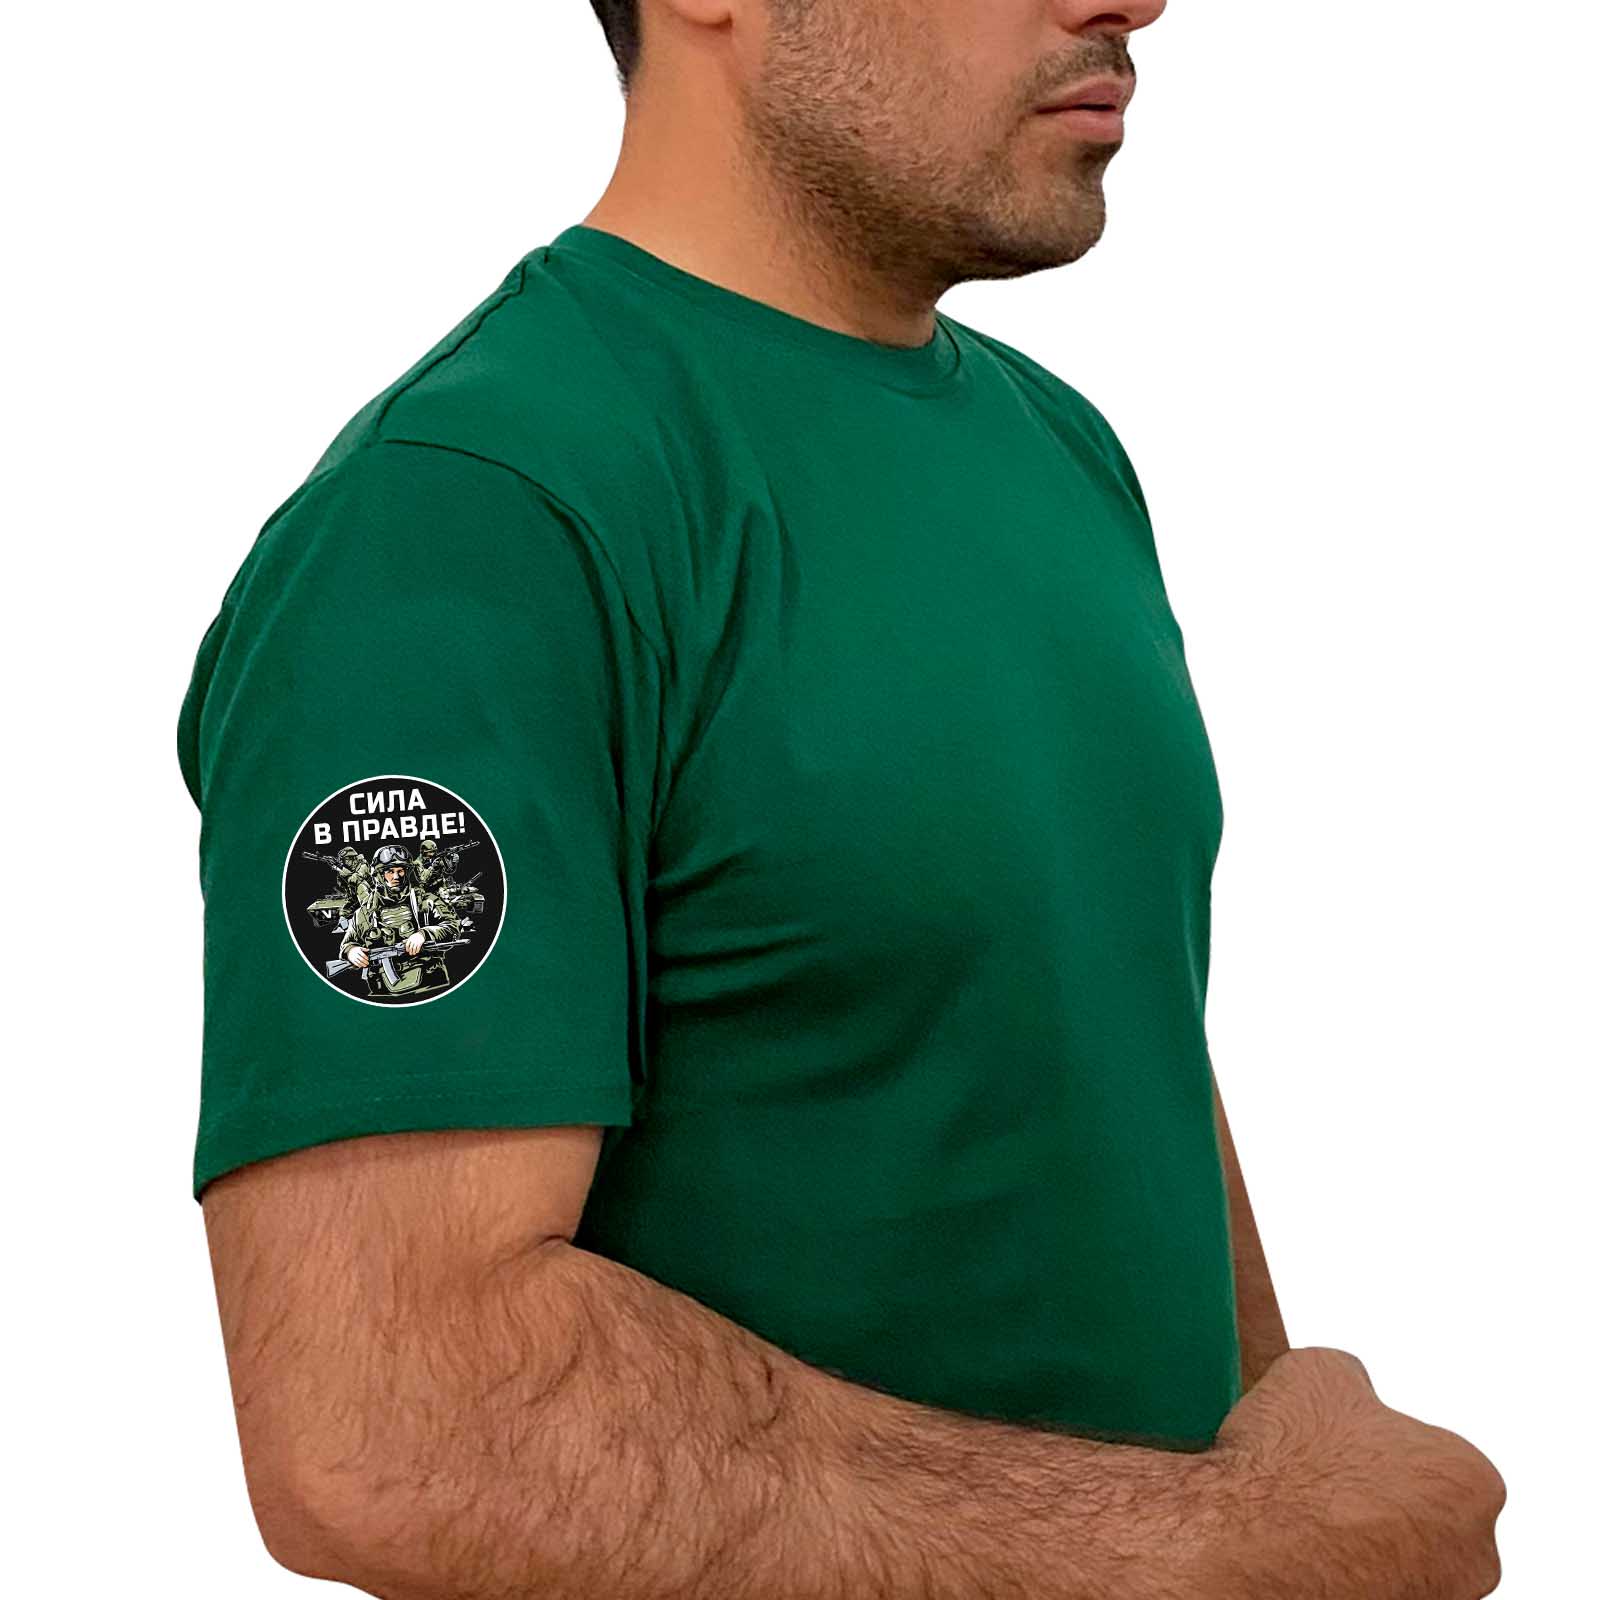 Зелёная футболка с термотрансфером "Сила в правде!" на рукаве